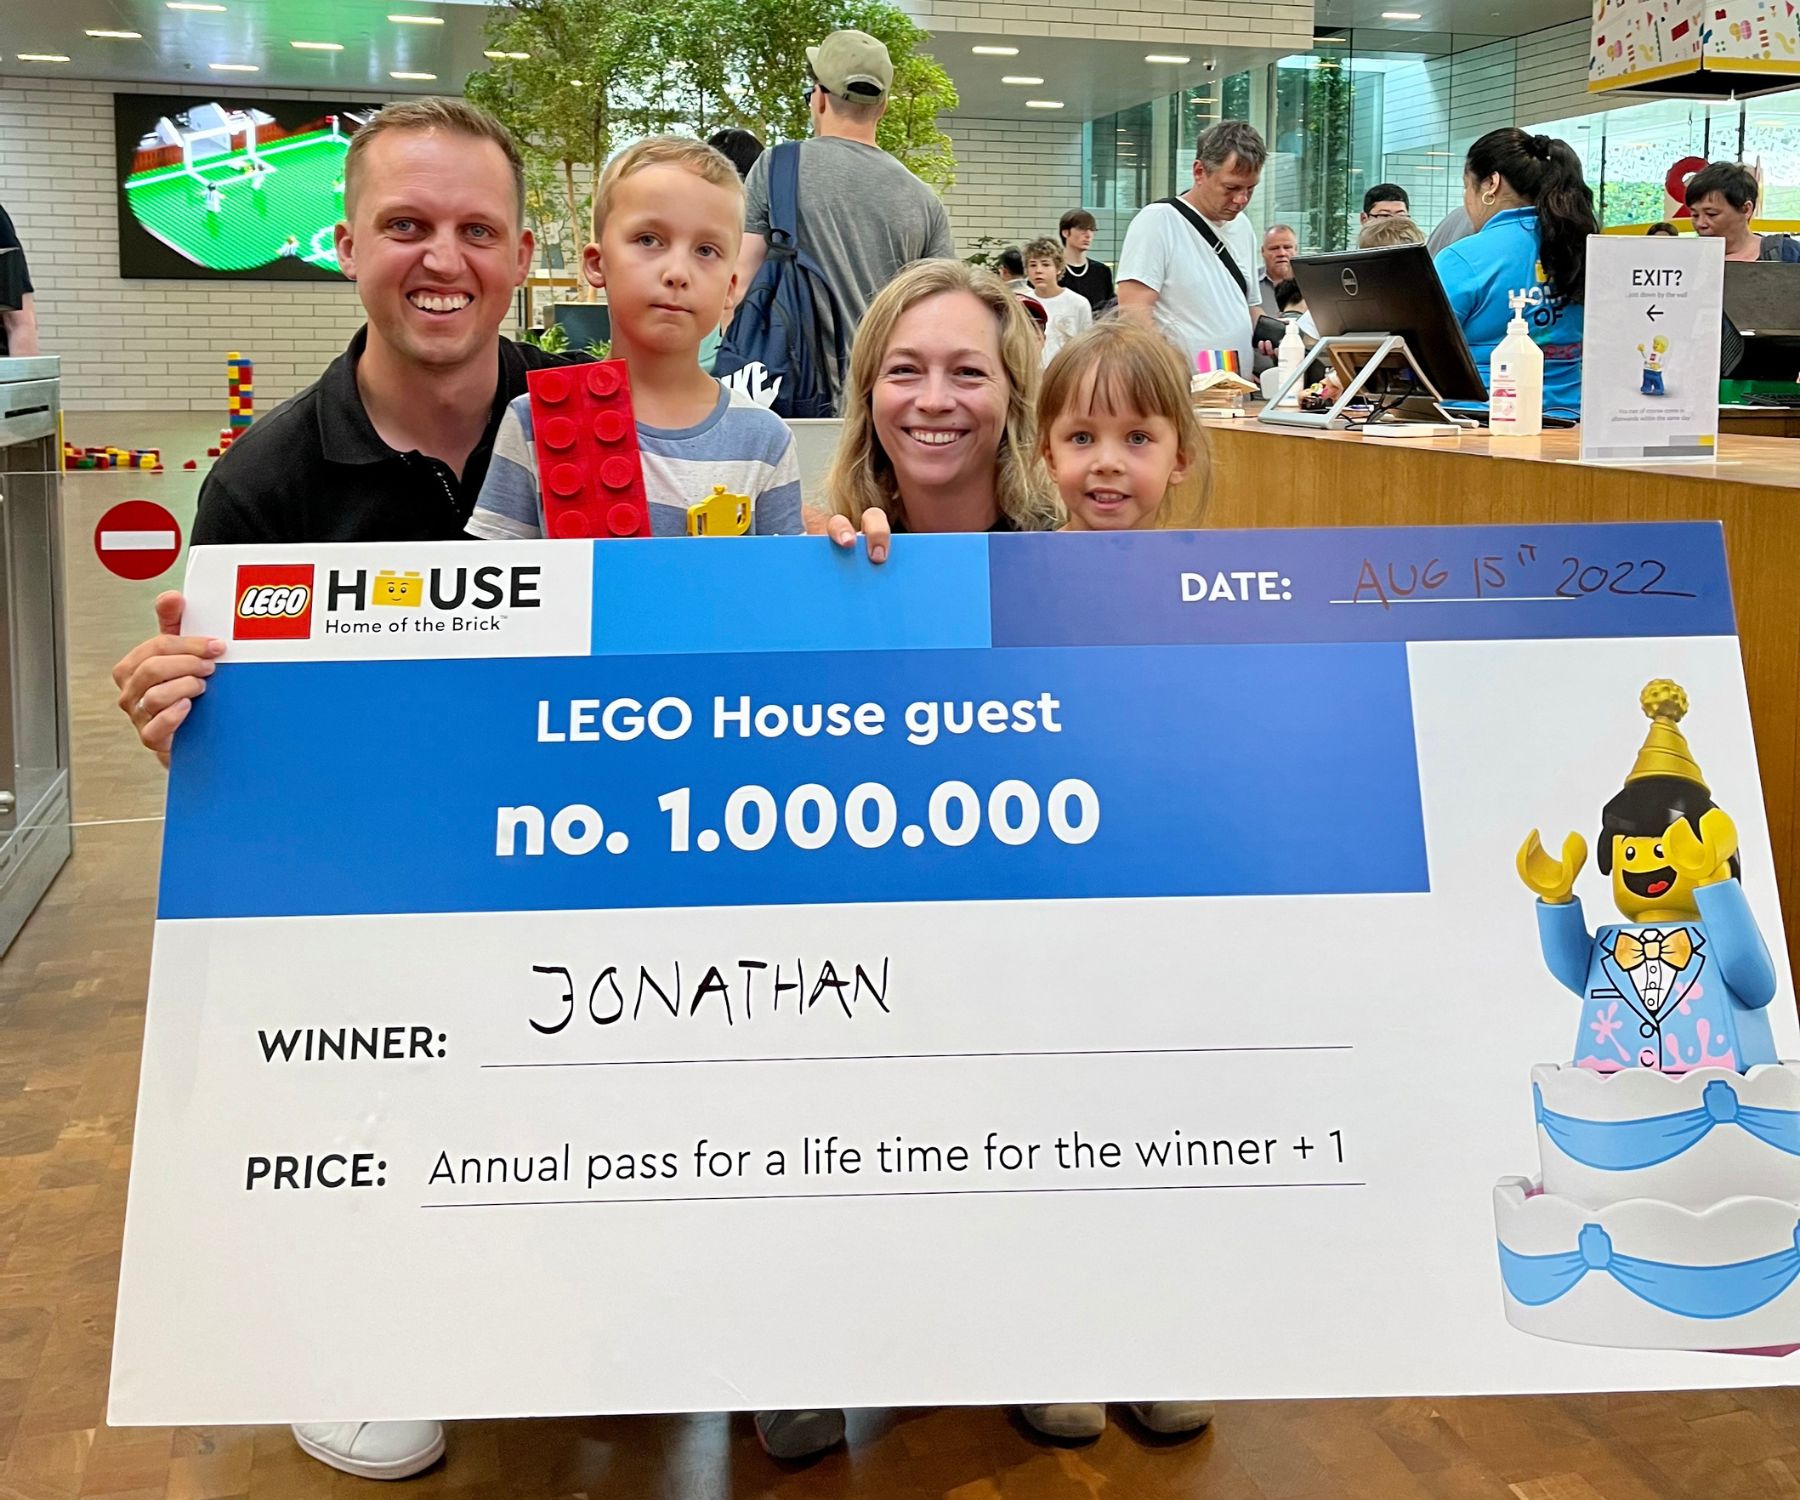 LEGO® House fejrer gæst nummer 1 million før forventet midt i fantastisk højsæson | LEGO House